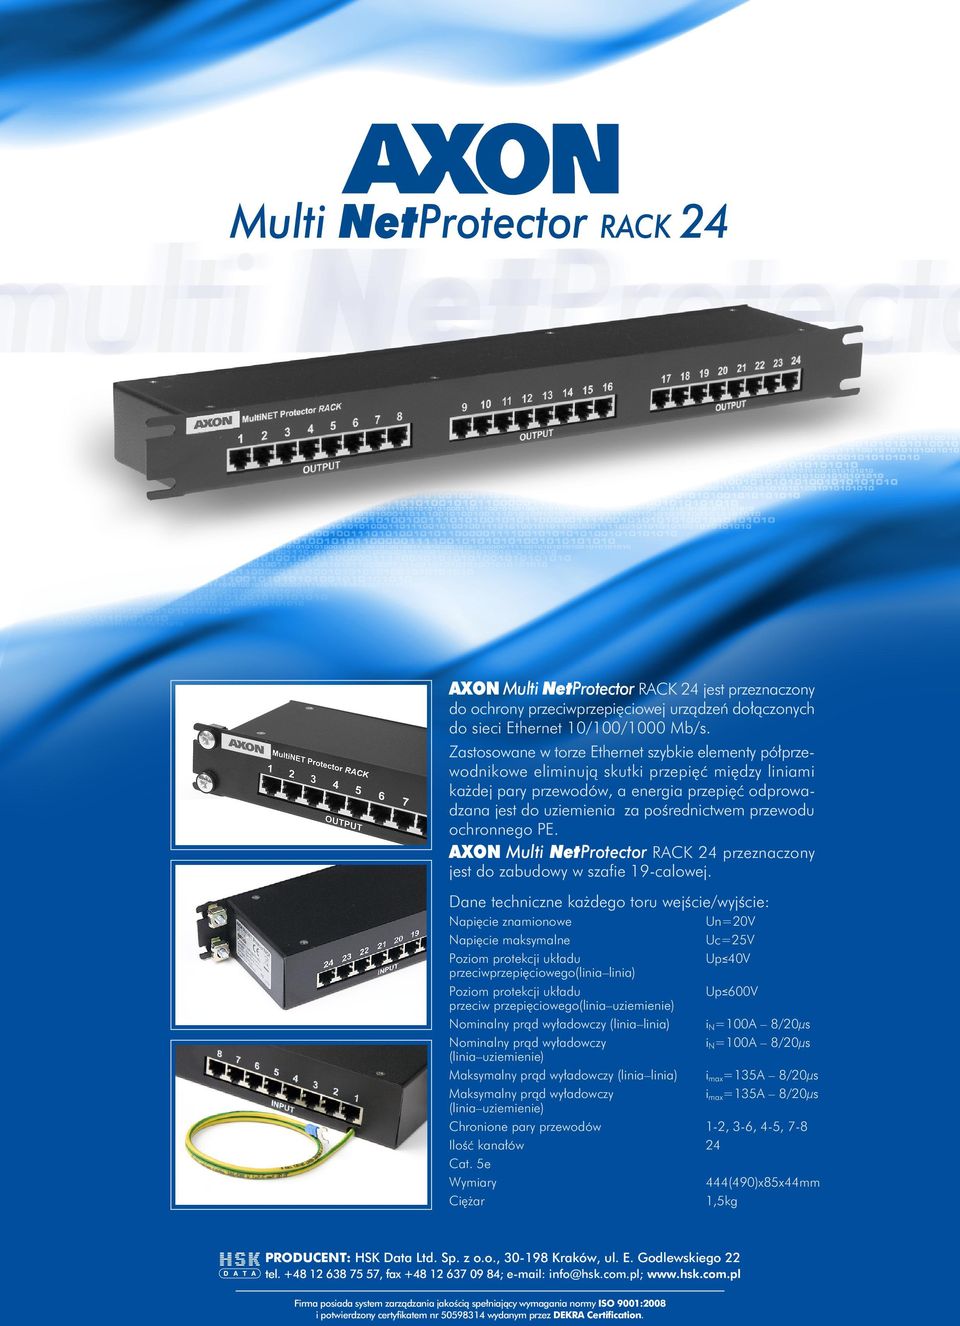 przewodu ochronnego PE. Multi NetProtector RACK 24 przeznaczony jest do zabudowy w szafie 19-calowej.